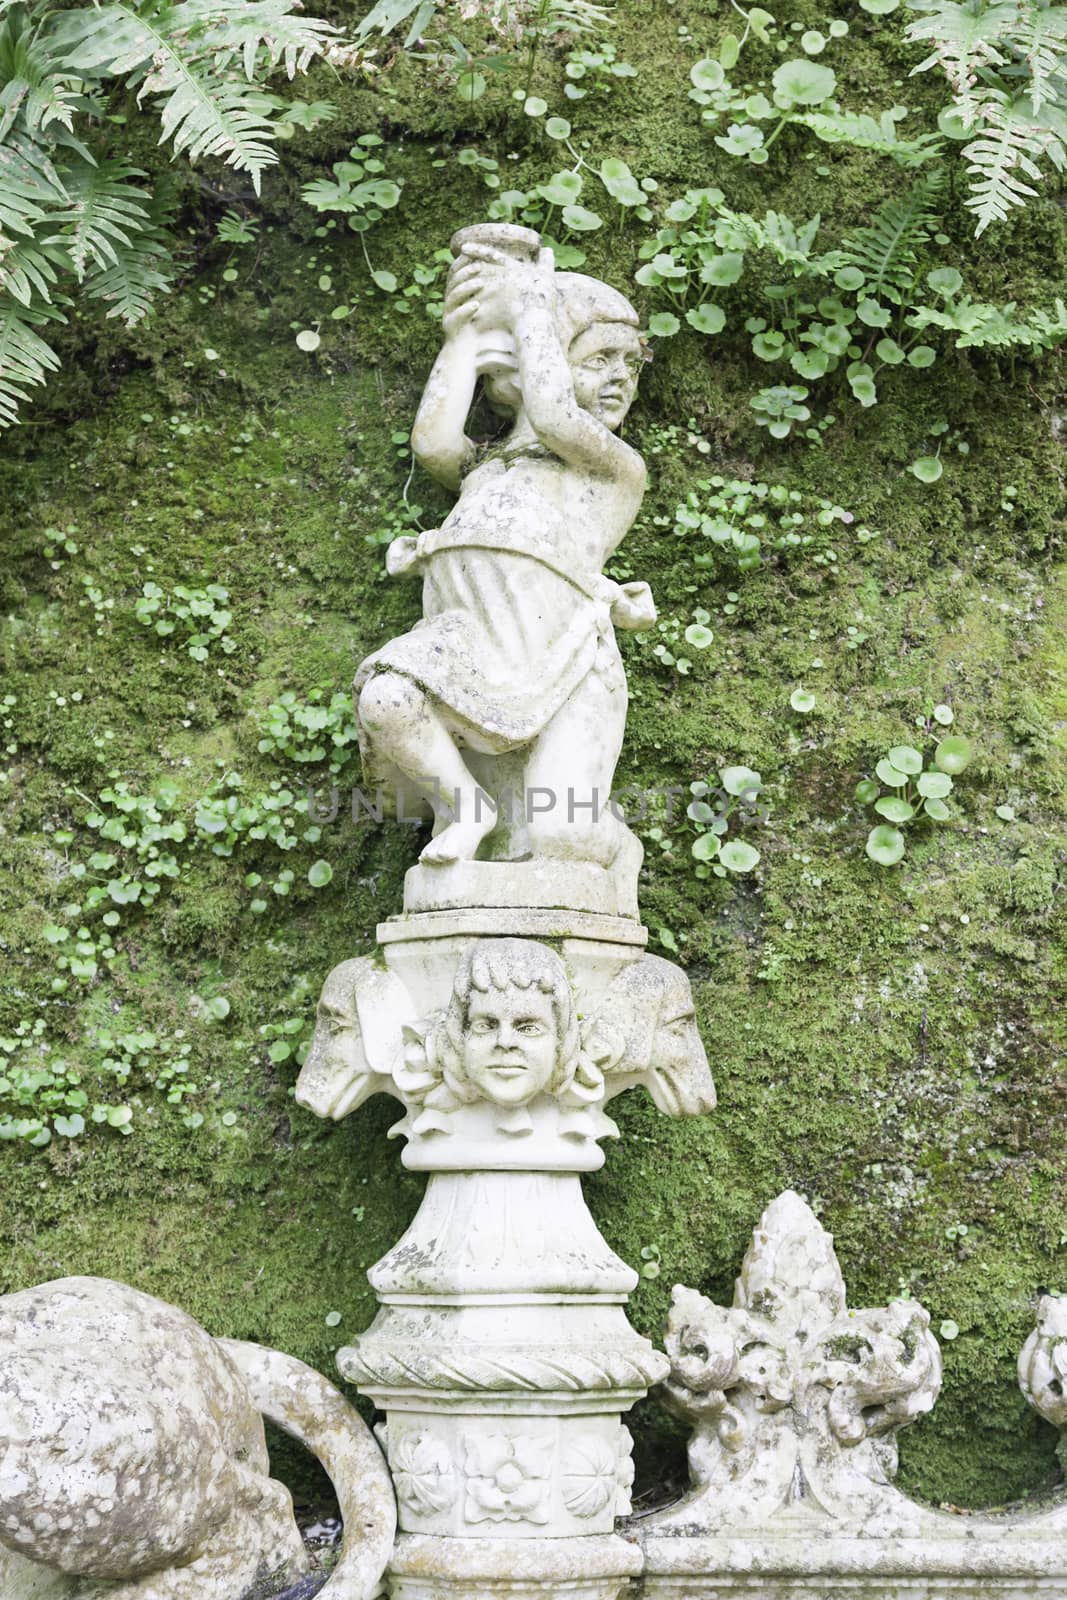 Stone statues in a garden in Sintra by esebene